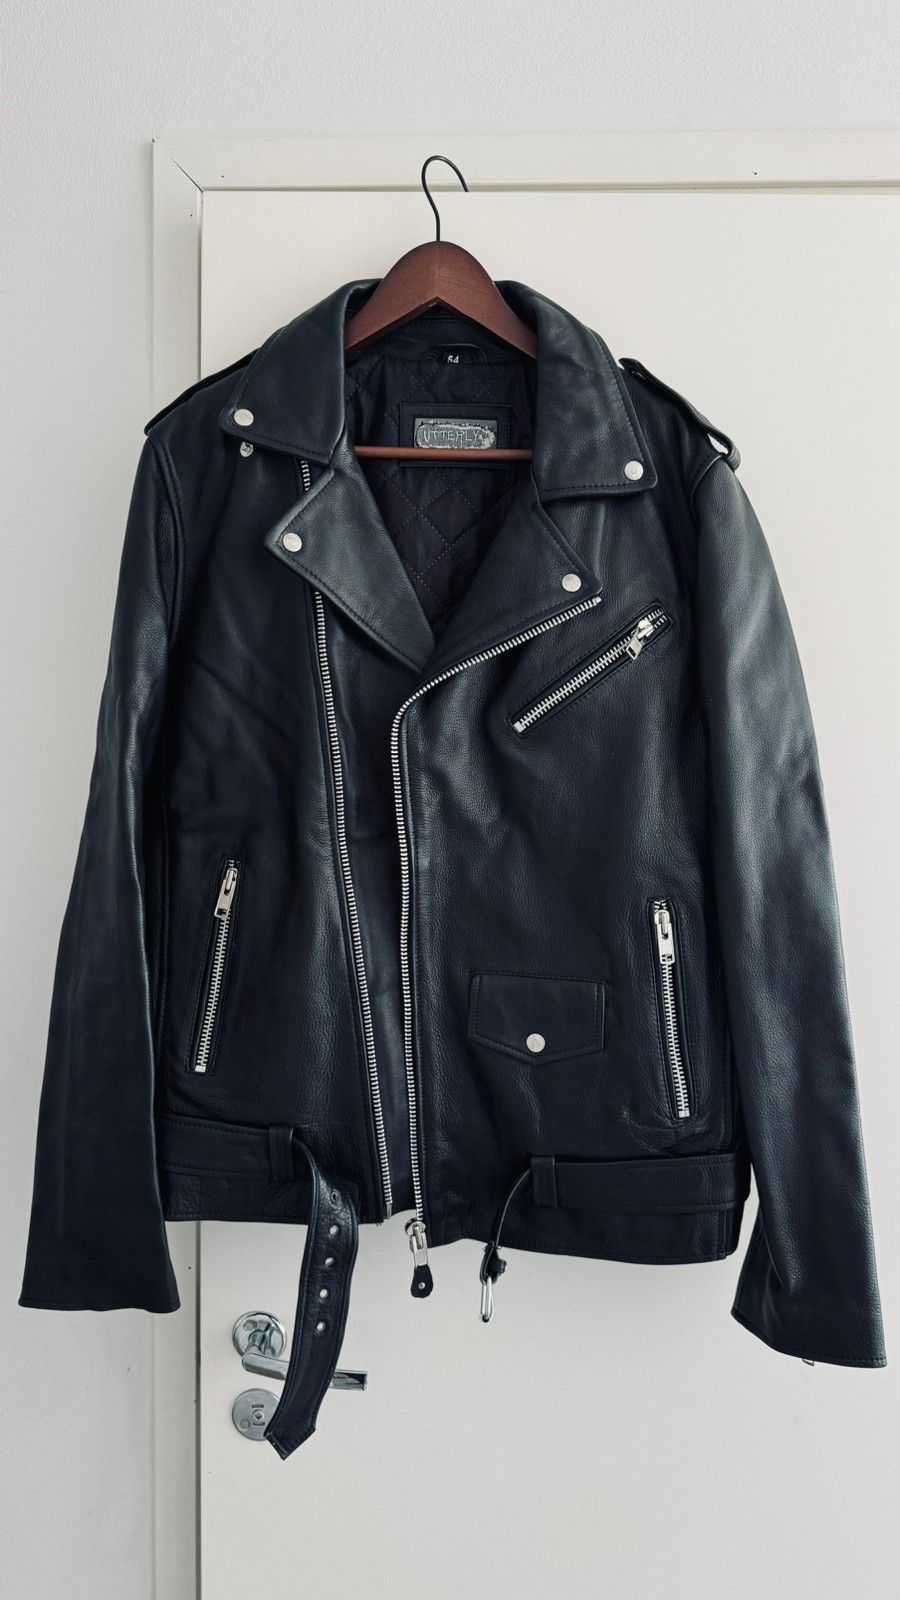 Nahkatakki - Brando-tyylinen biker-takki. Klassikko